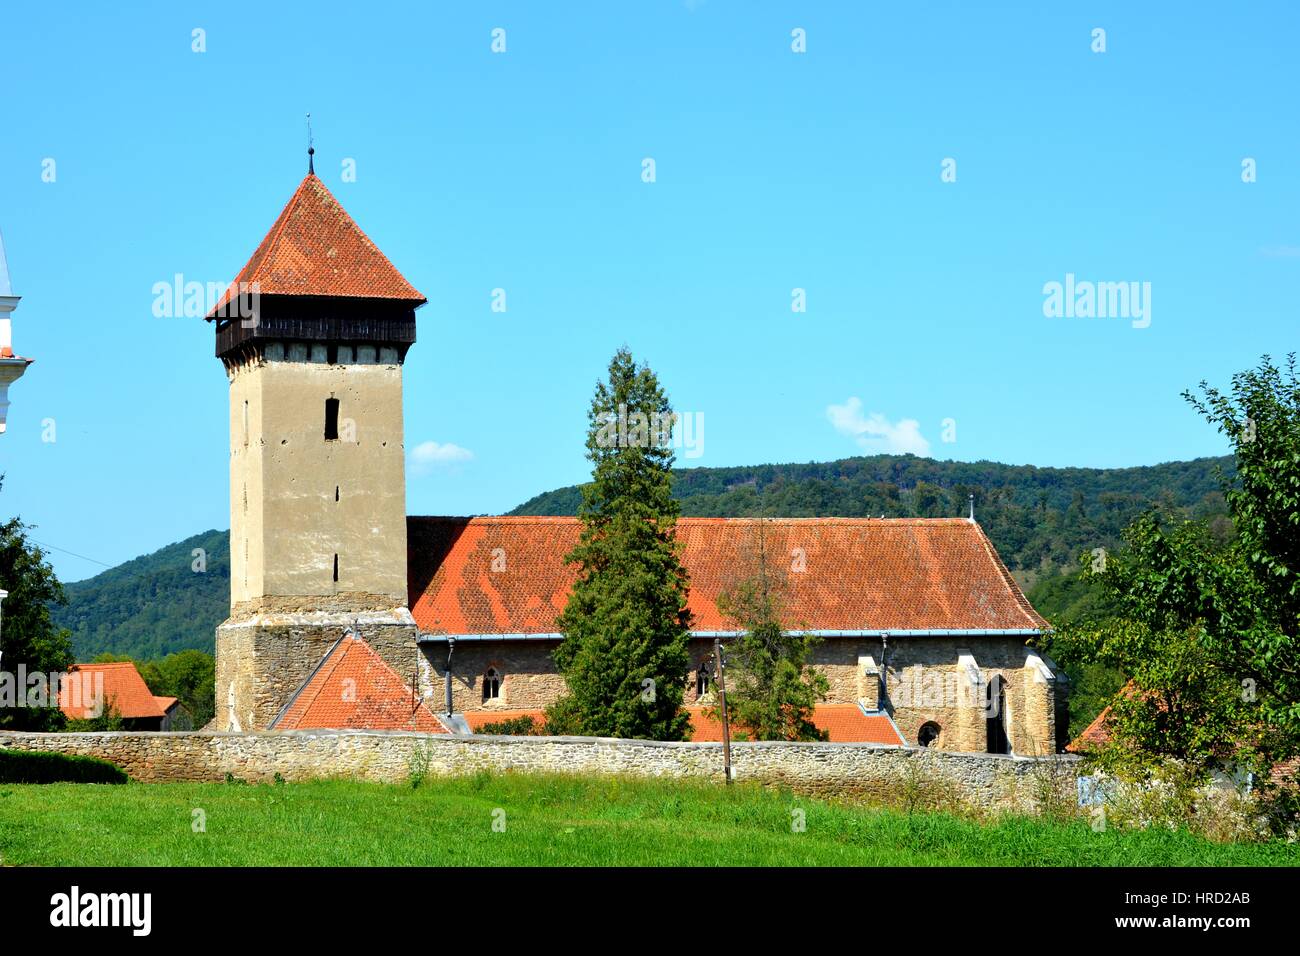 Cité médiévale fortifiée, dans le village de Transylvanie, Malancrav. Ici certaines des plus importantes peintures murales de style gothique en Transylvanie Banque D'Images